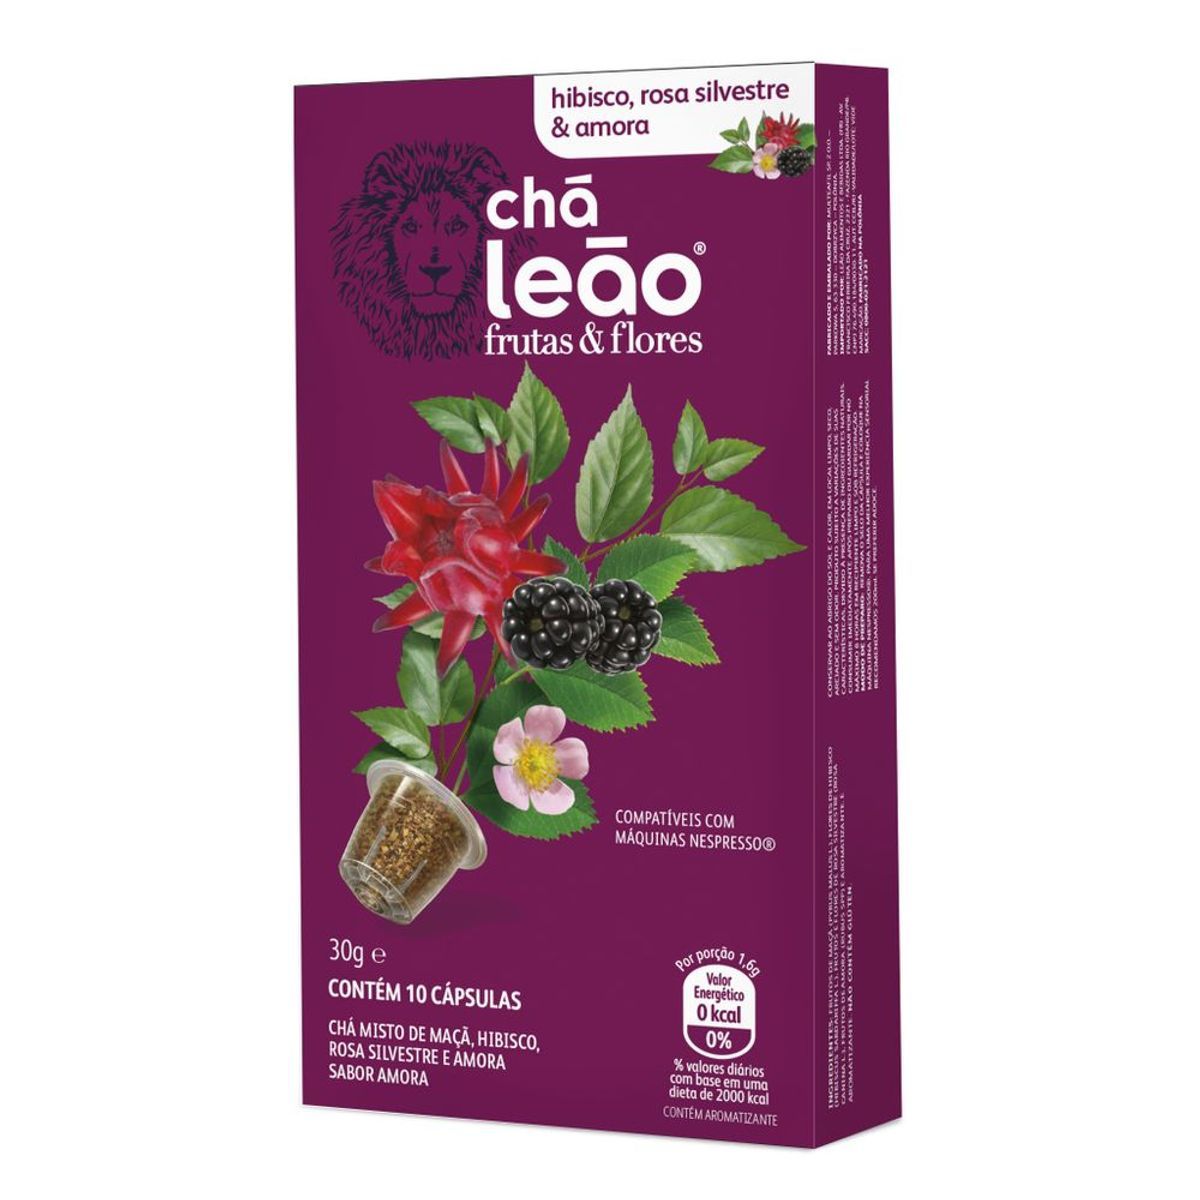 Chá em Cápsula Leão Sabor Hibisco, Rosa Silvestre, Amora, Frutas, Flores 30g